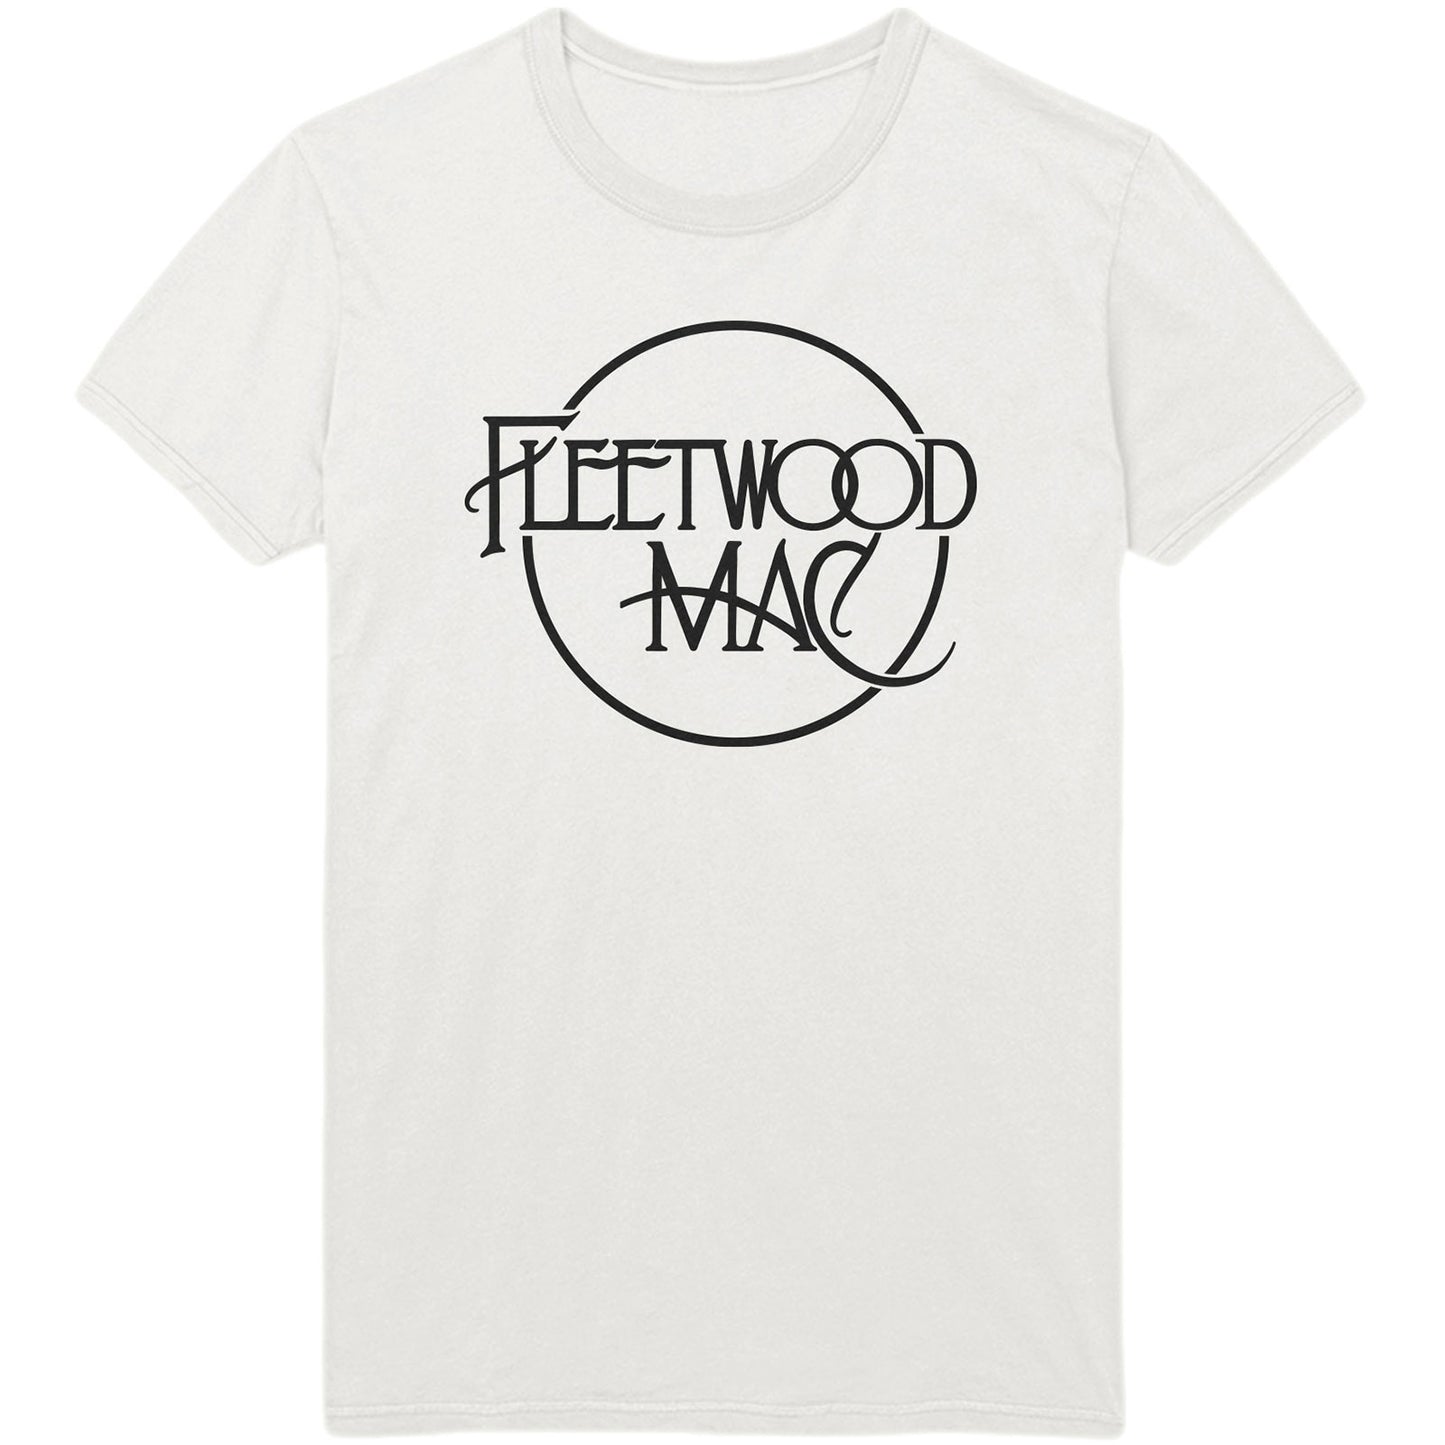 Fleetwood Mac T-Shirt: Classic Logo